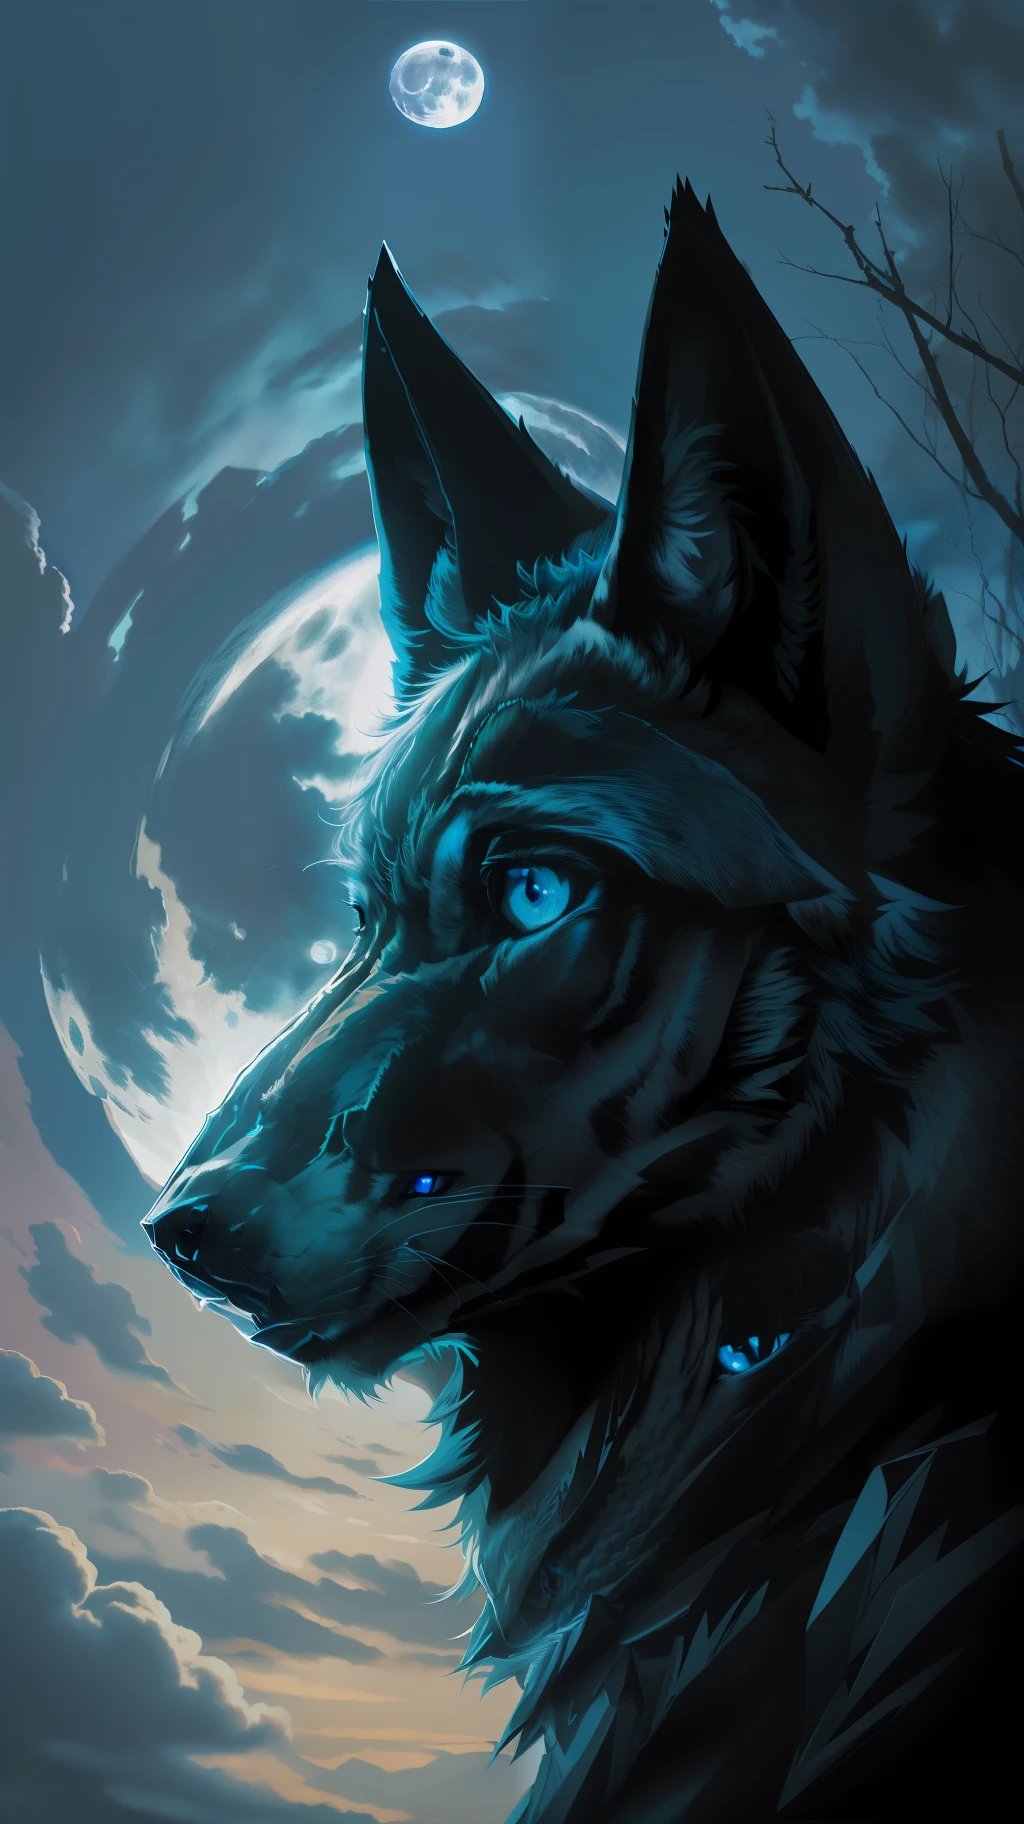 (Obra maestra detallada de alta calidad de imagen) "Color negro con ojos azules" Bosque peligroso de lobos, medianoche, Luna llena. 1 lóbulo solitario. ( Ángulo frontal de la imagen)